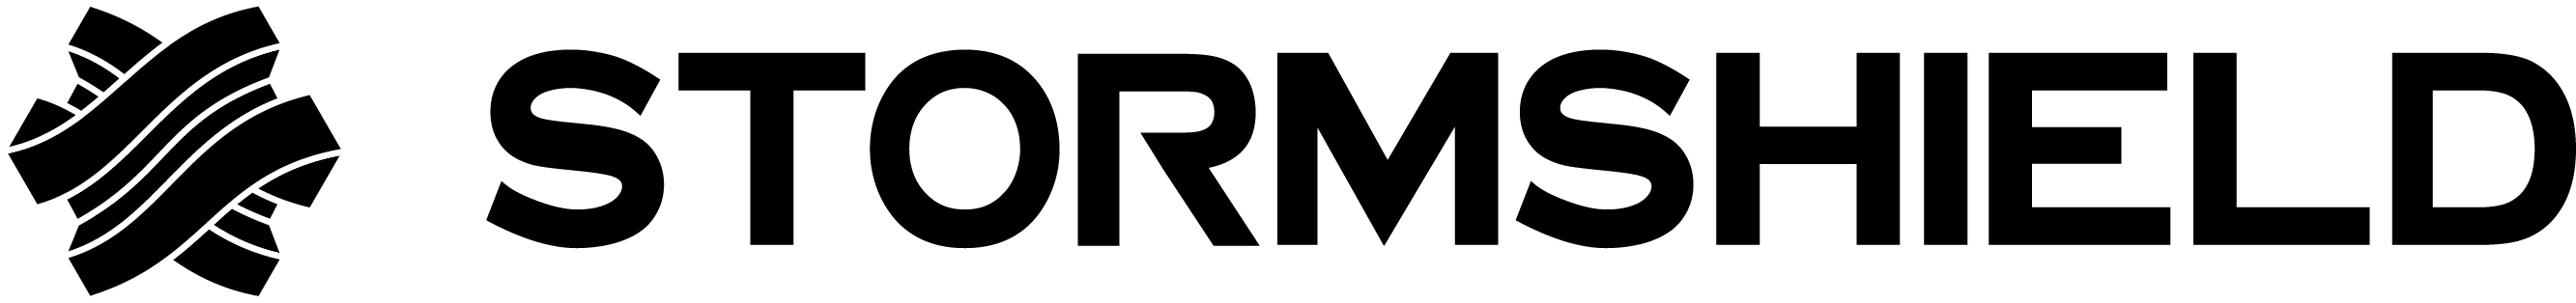 Stormshield_Logo_black_Long